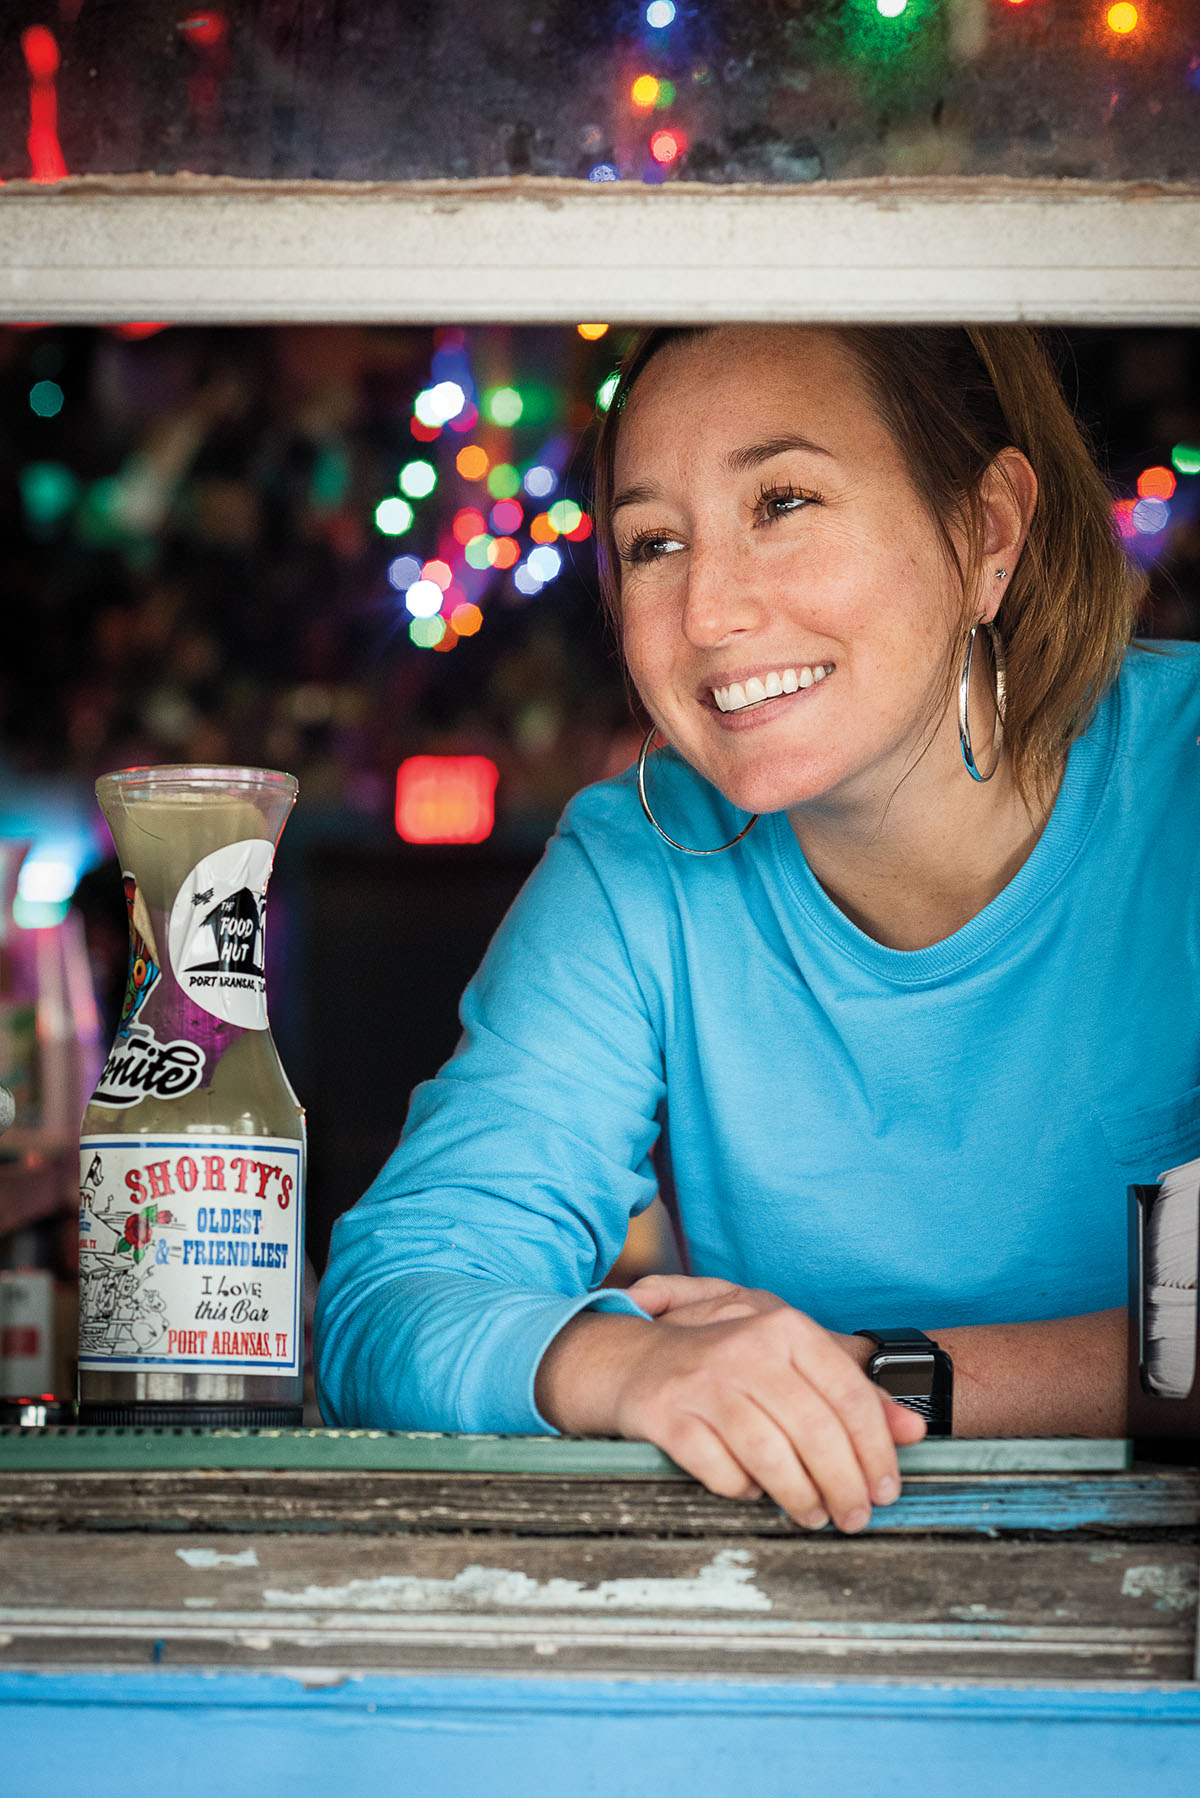 A woman wearing a blue shirt smiles next to a bar tip jar